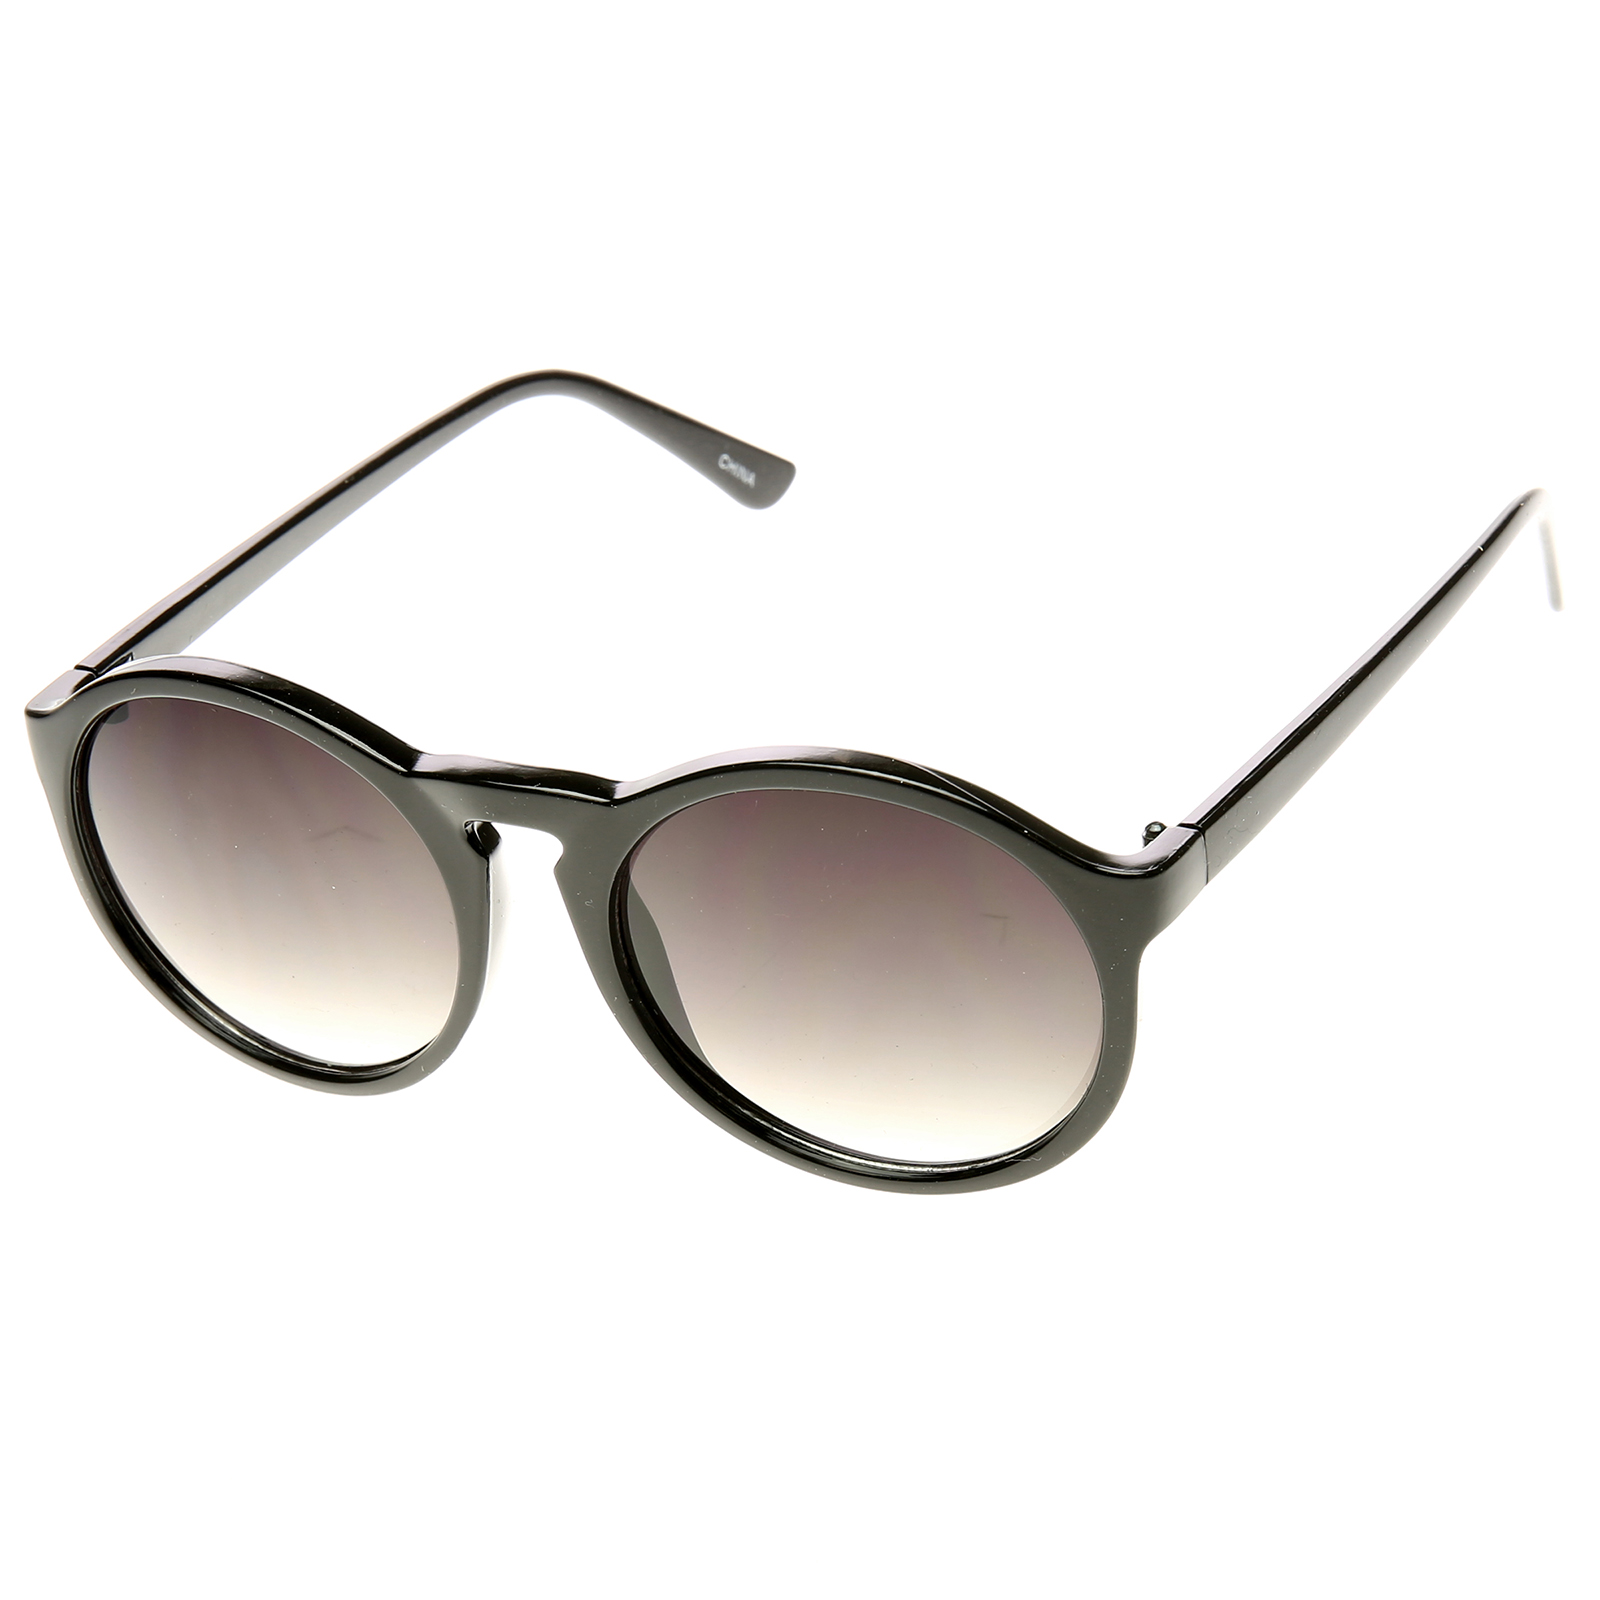 Oversized P3 Frame Keyhole Bridge Round Sunglasses | eBay